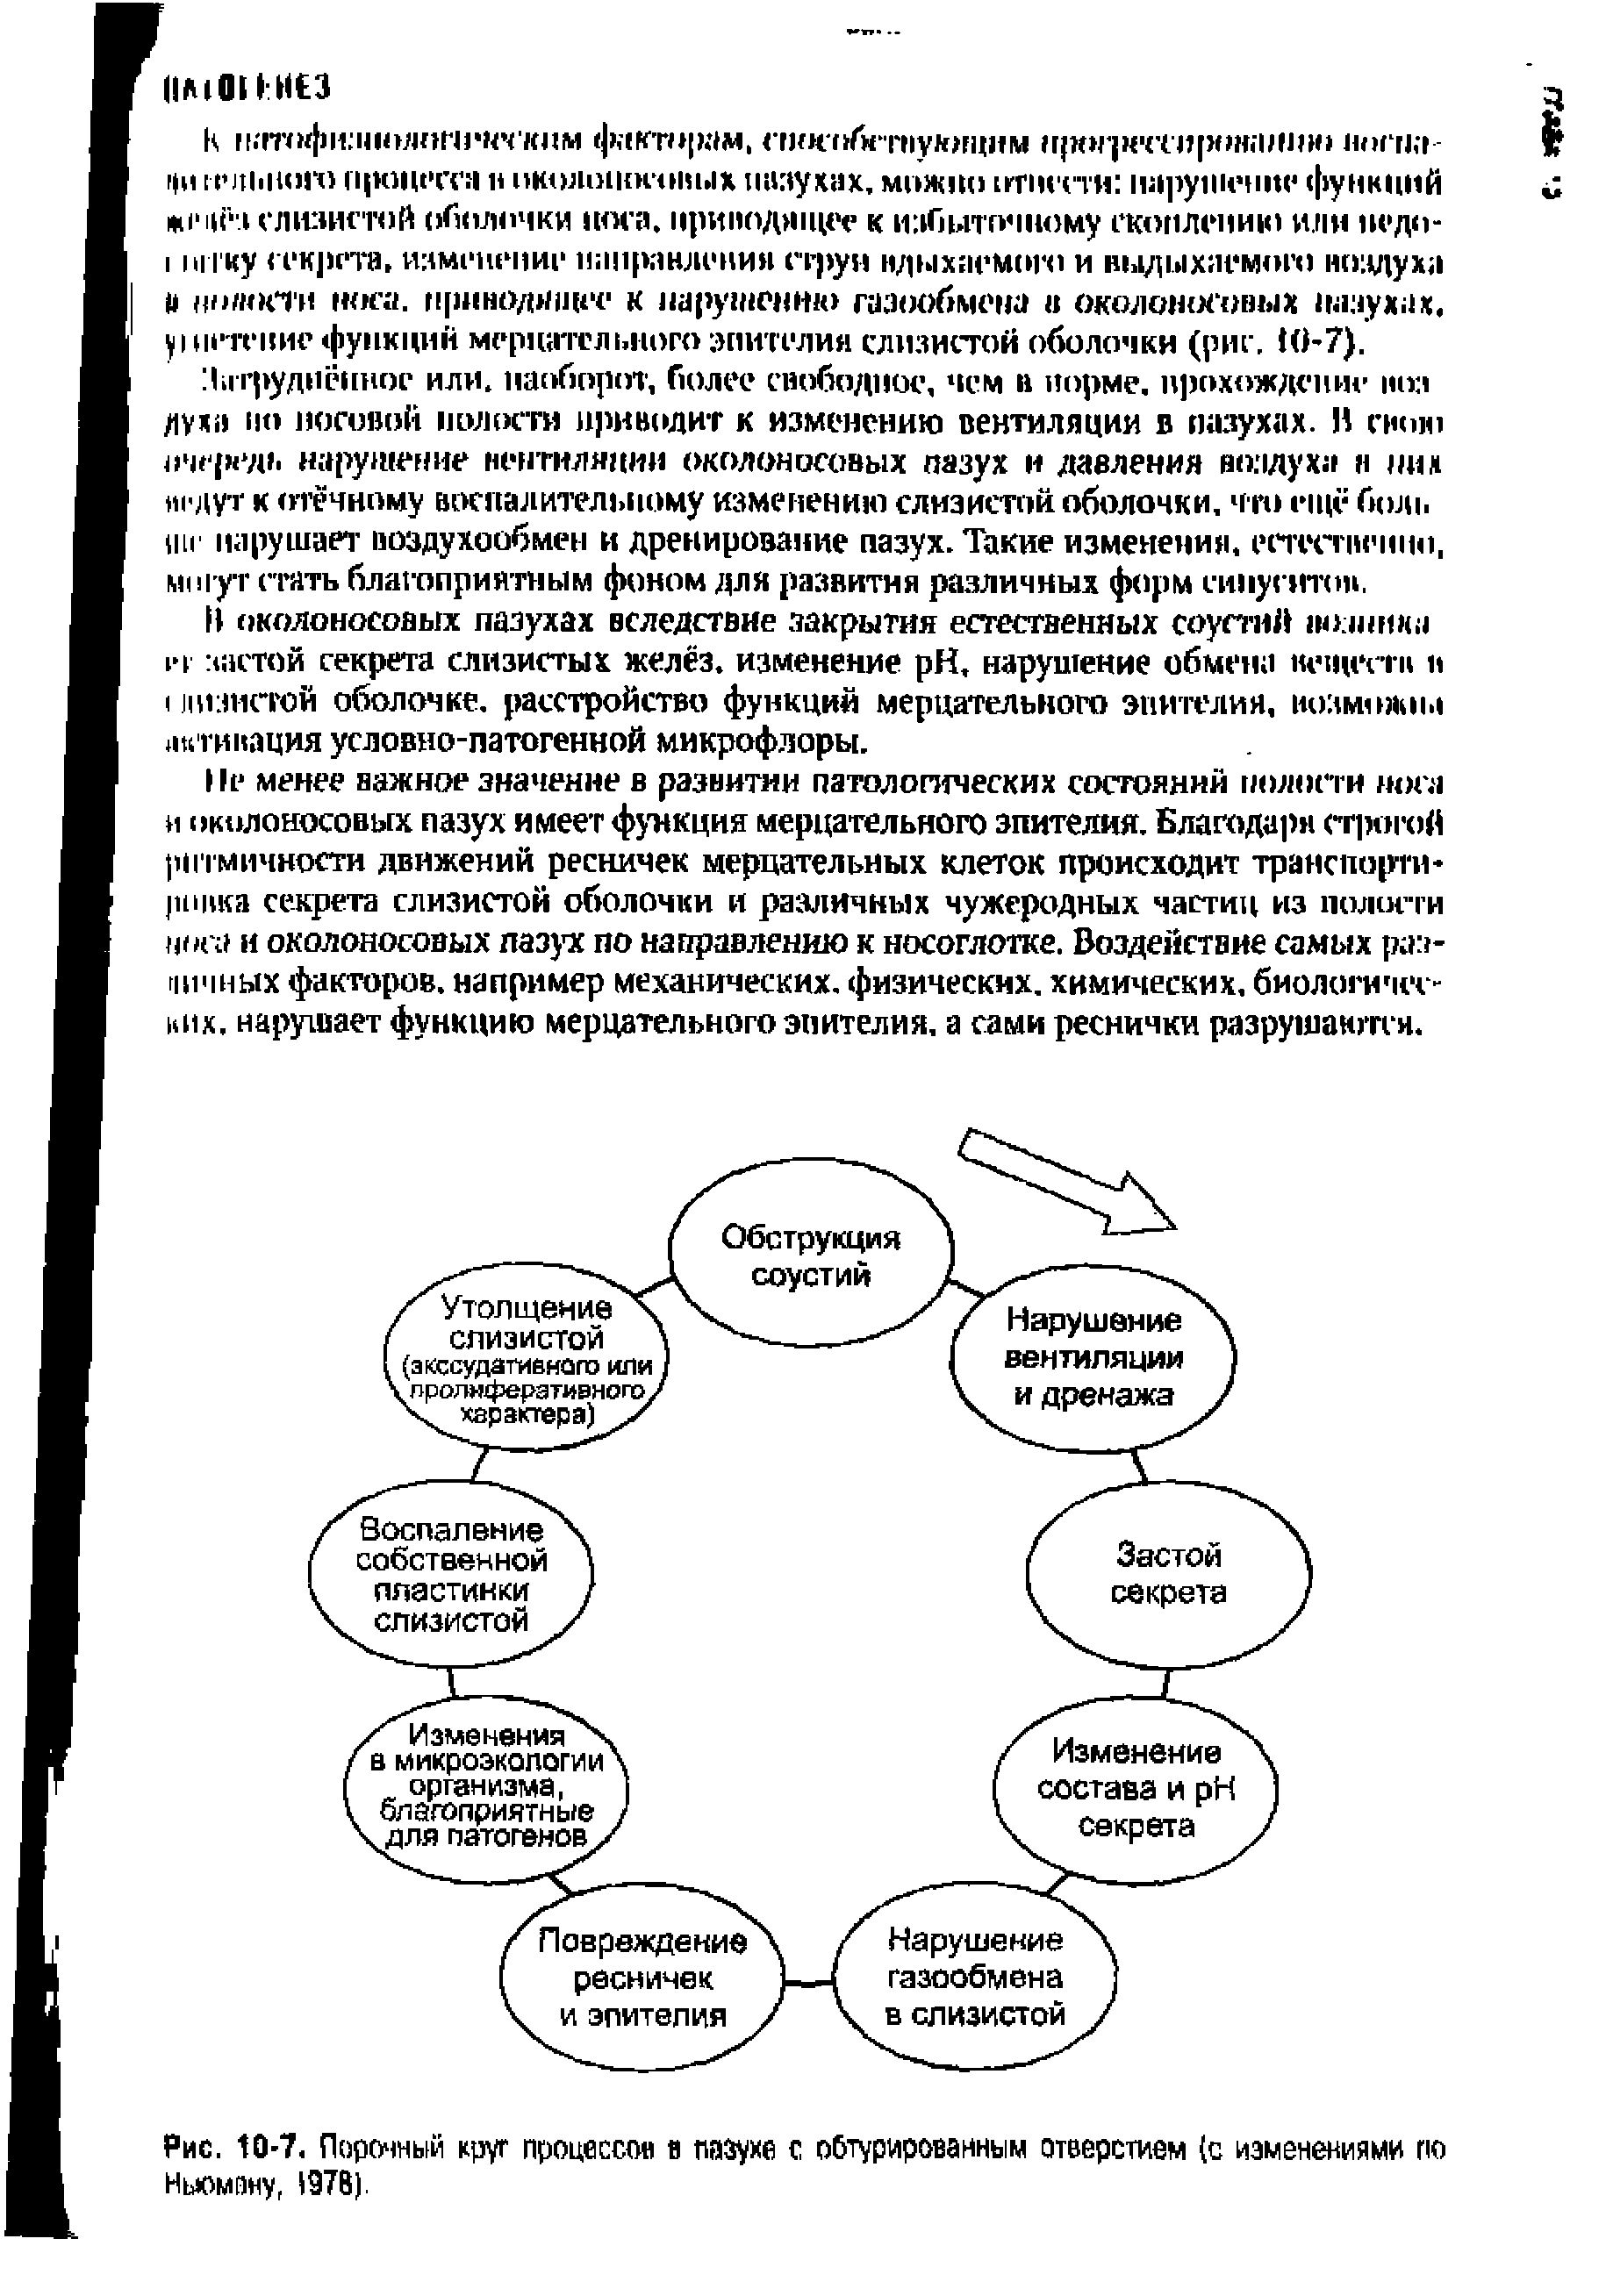 Рис. 10-7. Порочный круг процессов в пазухе с обтурированным отверстием (с изменениями по Ньюмену, 1978).